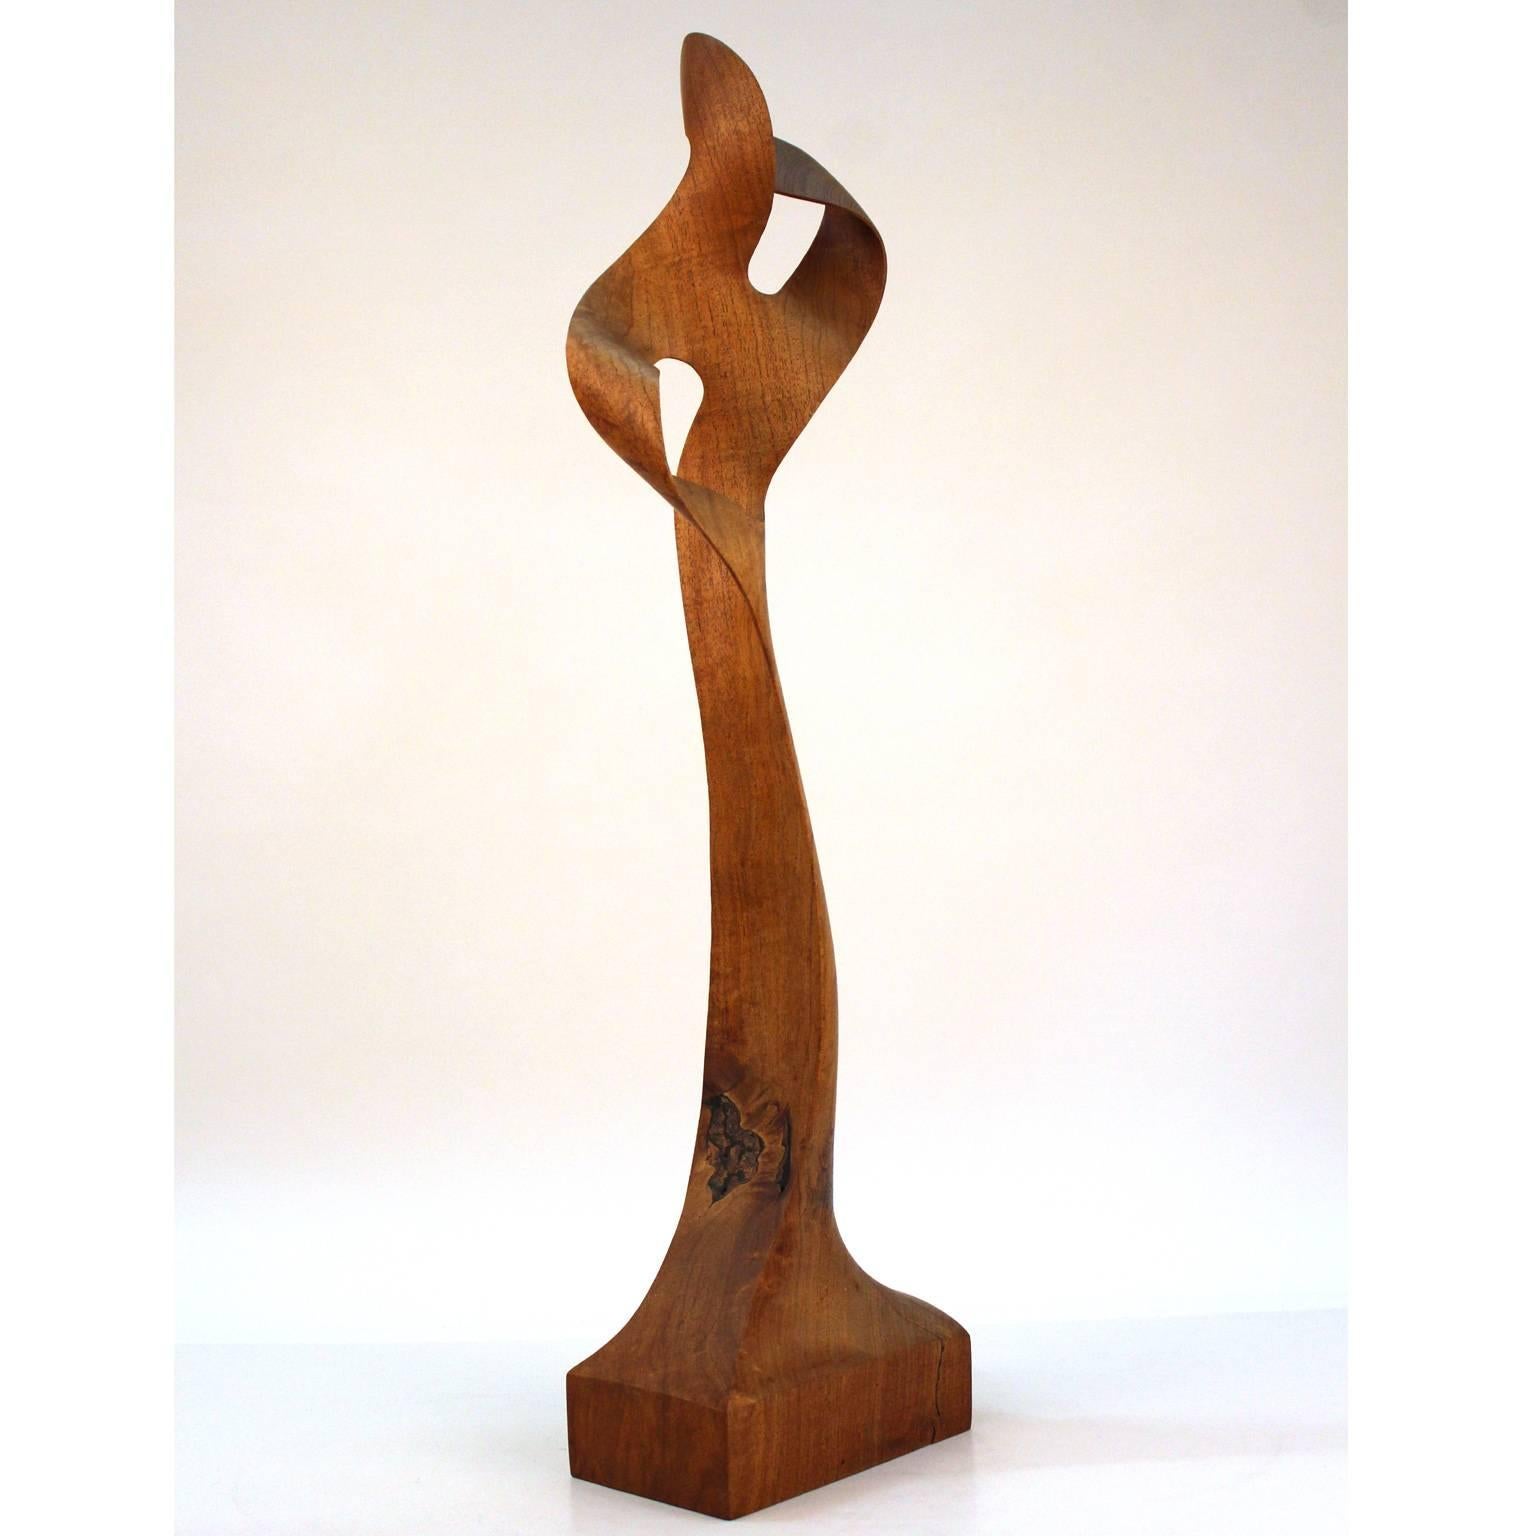 Sculpture moderniste en bois sculpté de l'architecte et artiste américain Thomas E. Woodward (1932-2011). La sculpture semble être fabriquée en noyer américain et se termine à son sommet par une double bande de Möbius. Excellent état d'origine,